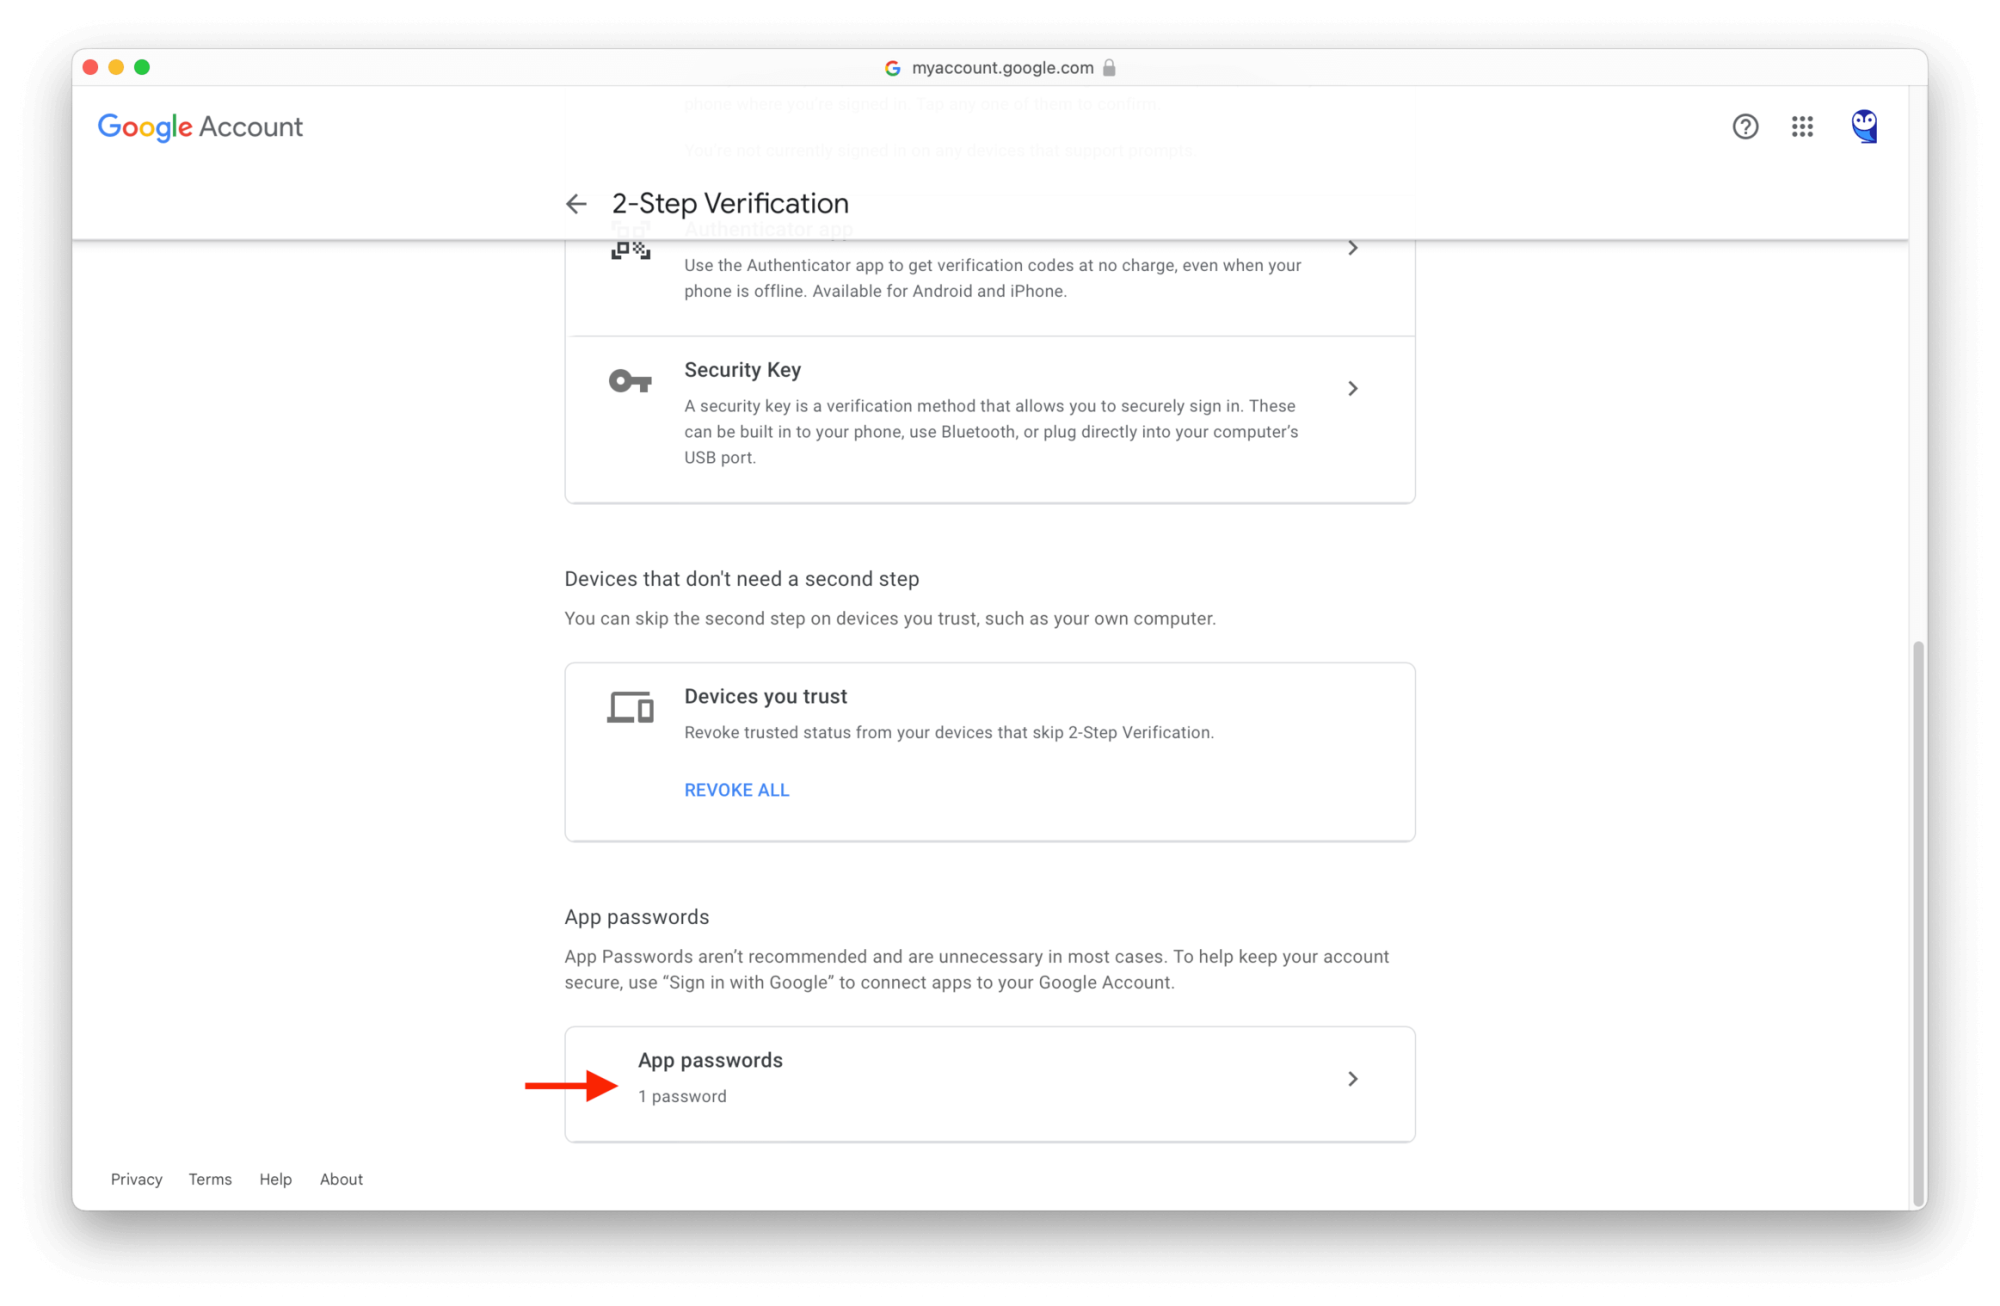 Gmail Migration: Create App Password – Open App Passwords